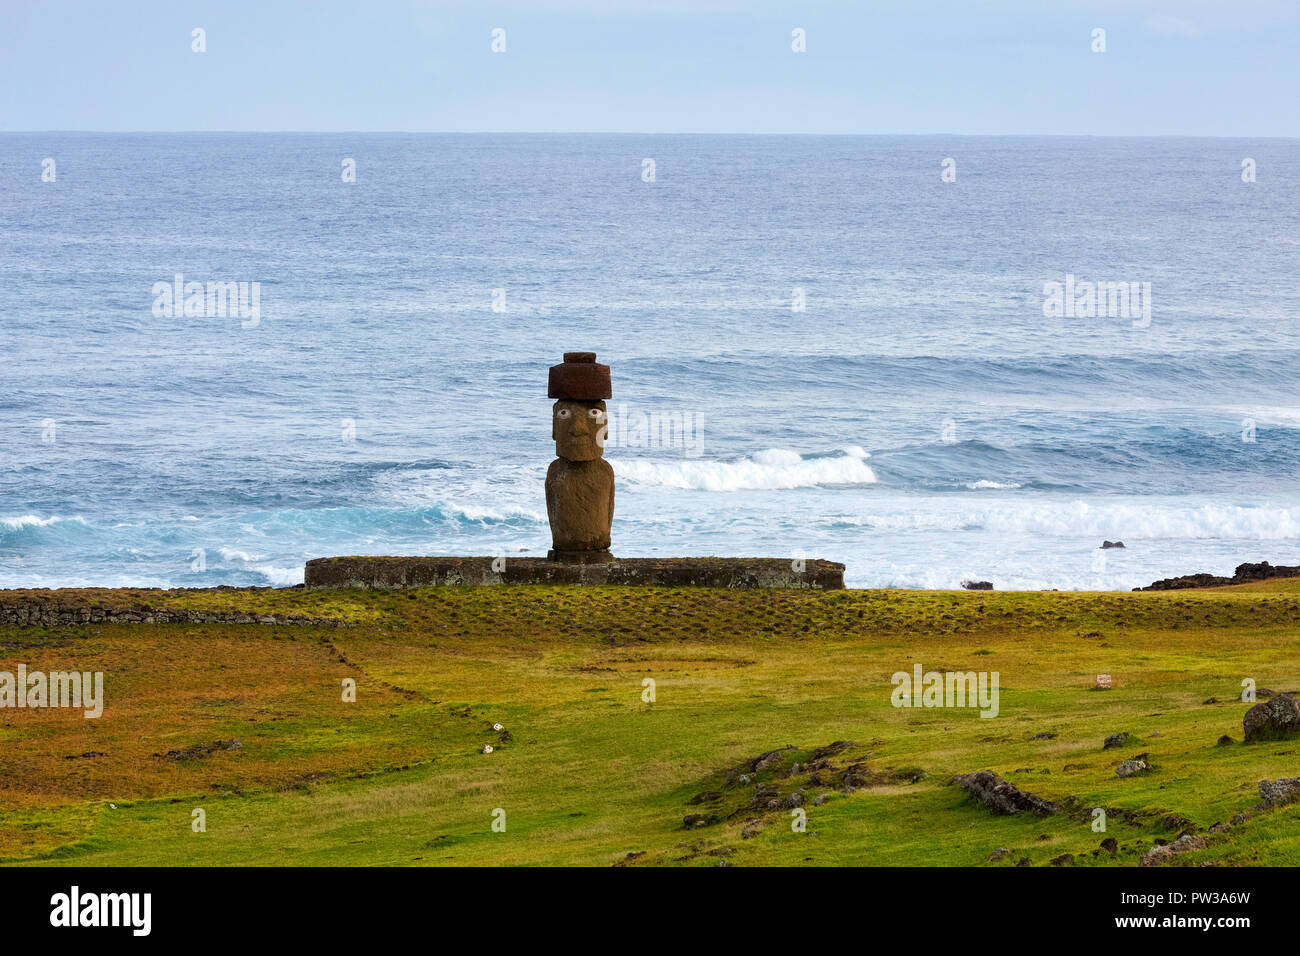 Ahu Ko Te Riku Moai with red Pukao hat, hat Easter Island, Rapa Nui, Chile Stock Photo